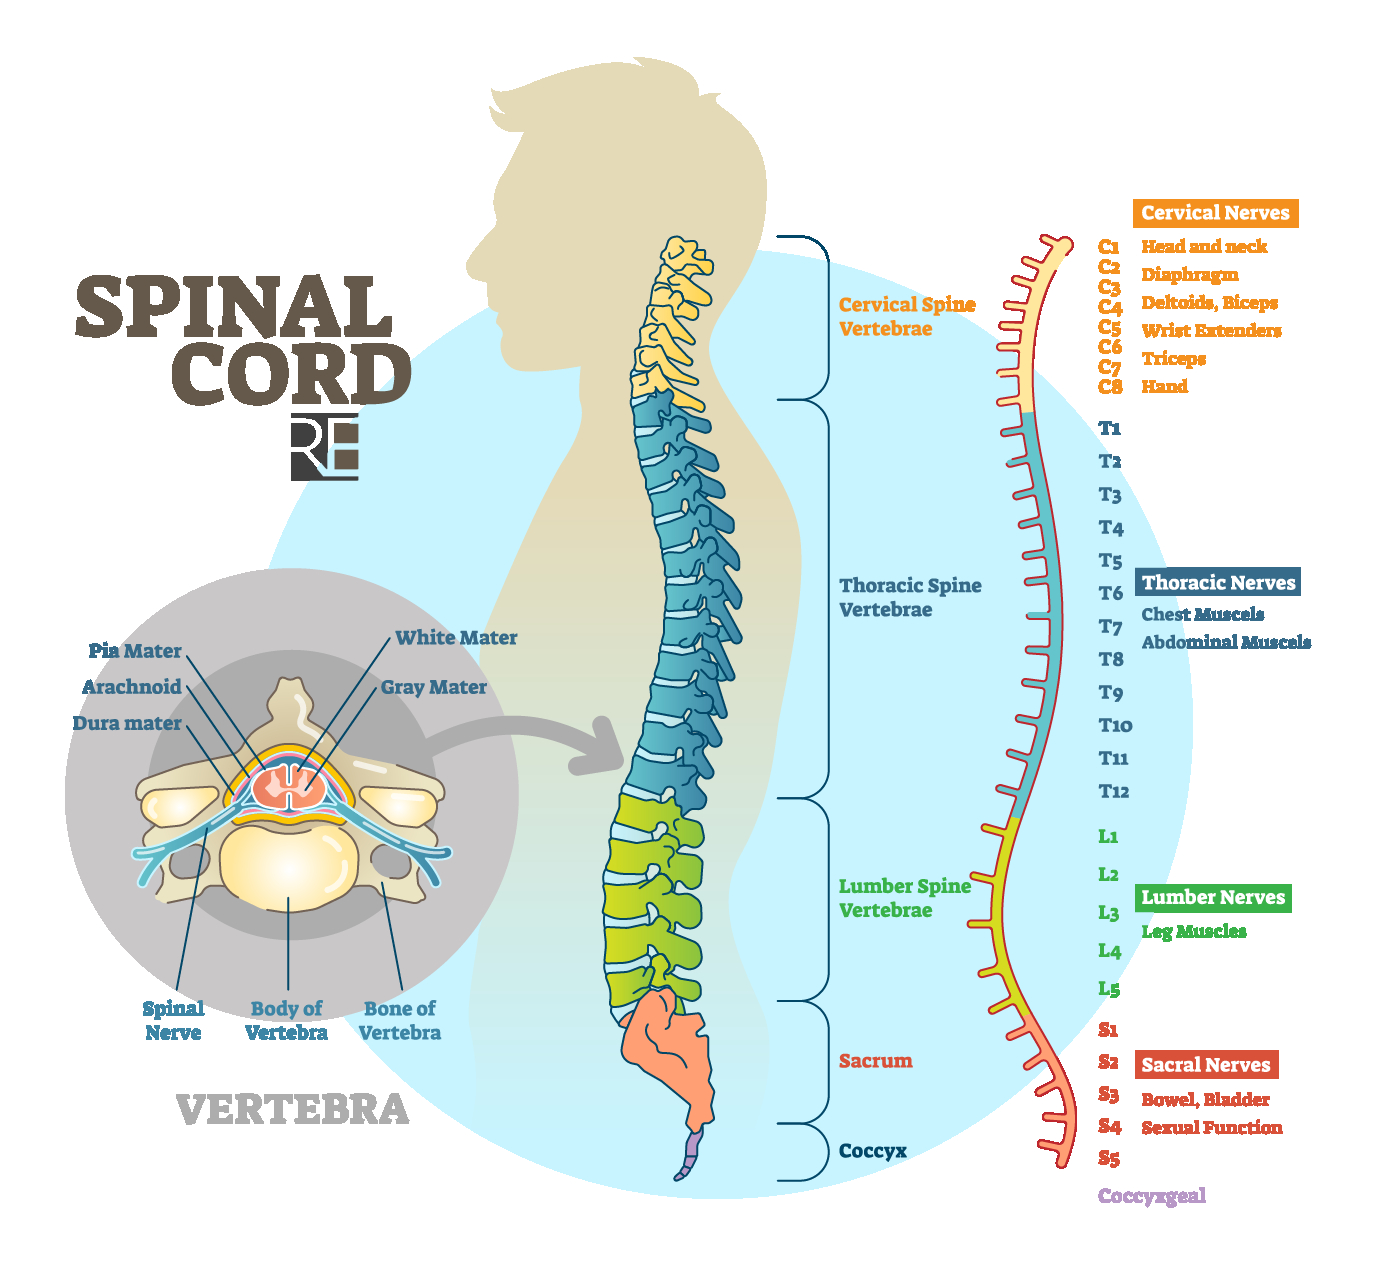 Spinal Cord Diagram Raynes Erickson Spinal Cord Diagram Raynes Erickson Attorneys At Law